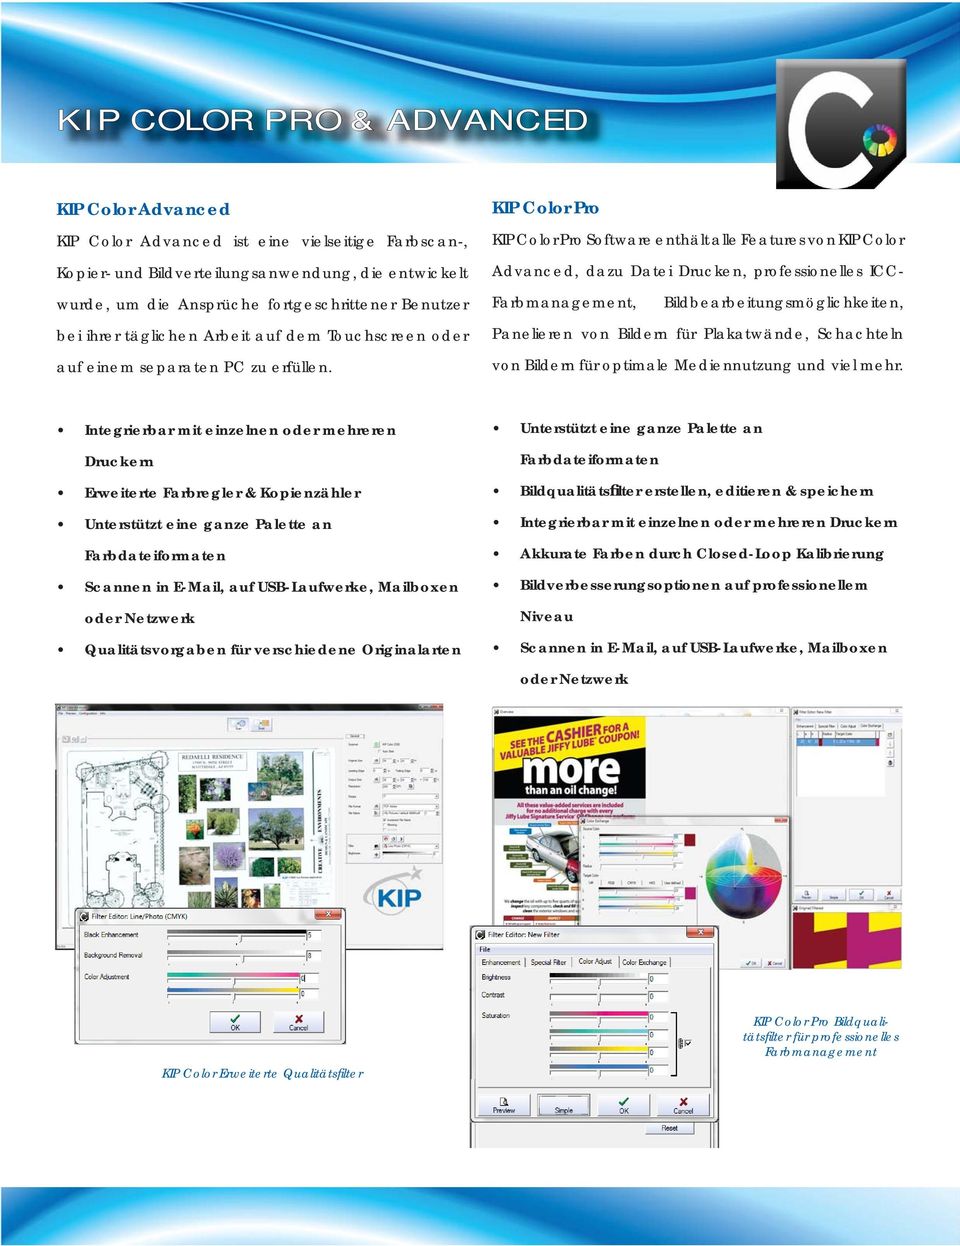 KIP Color Pro KIP Color Pro Software enthält alle Features von KIP Color Advanced, dazu Datei Drucken, professionelles ICC- Farbmanagement, Bildbearbeitungsmöglichkeiten, Panelieren von Bildern für